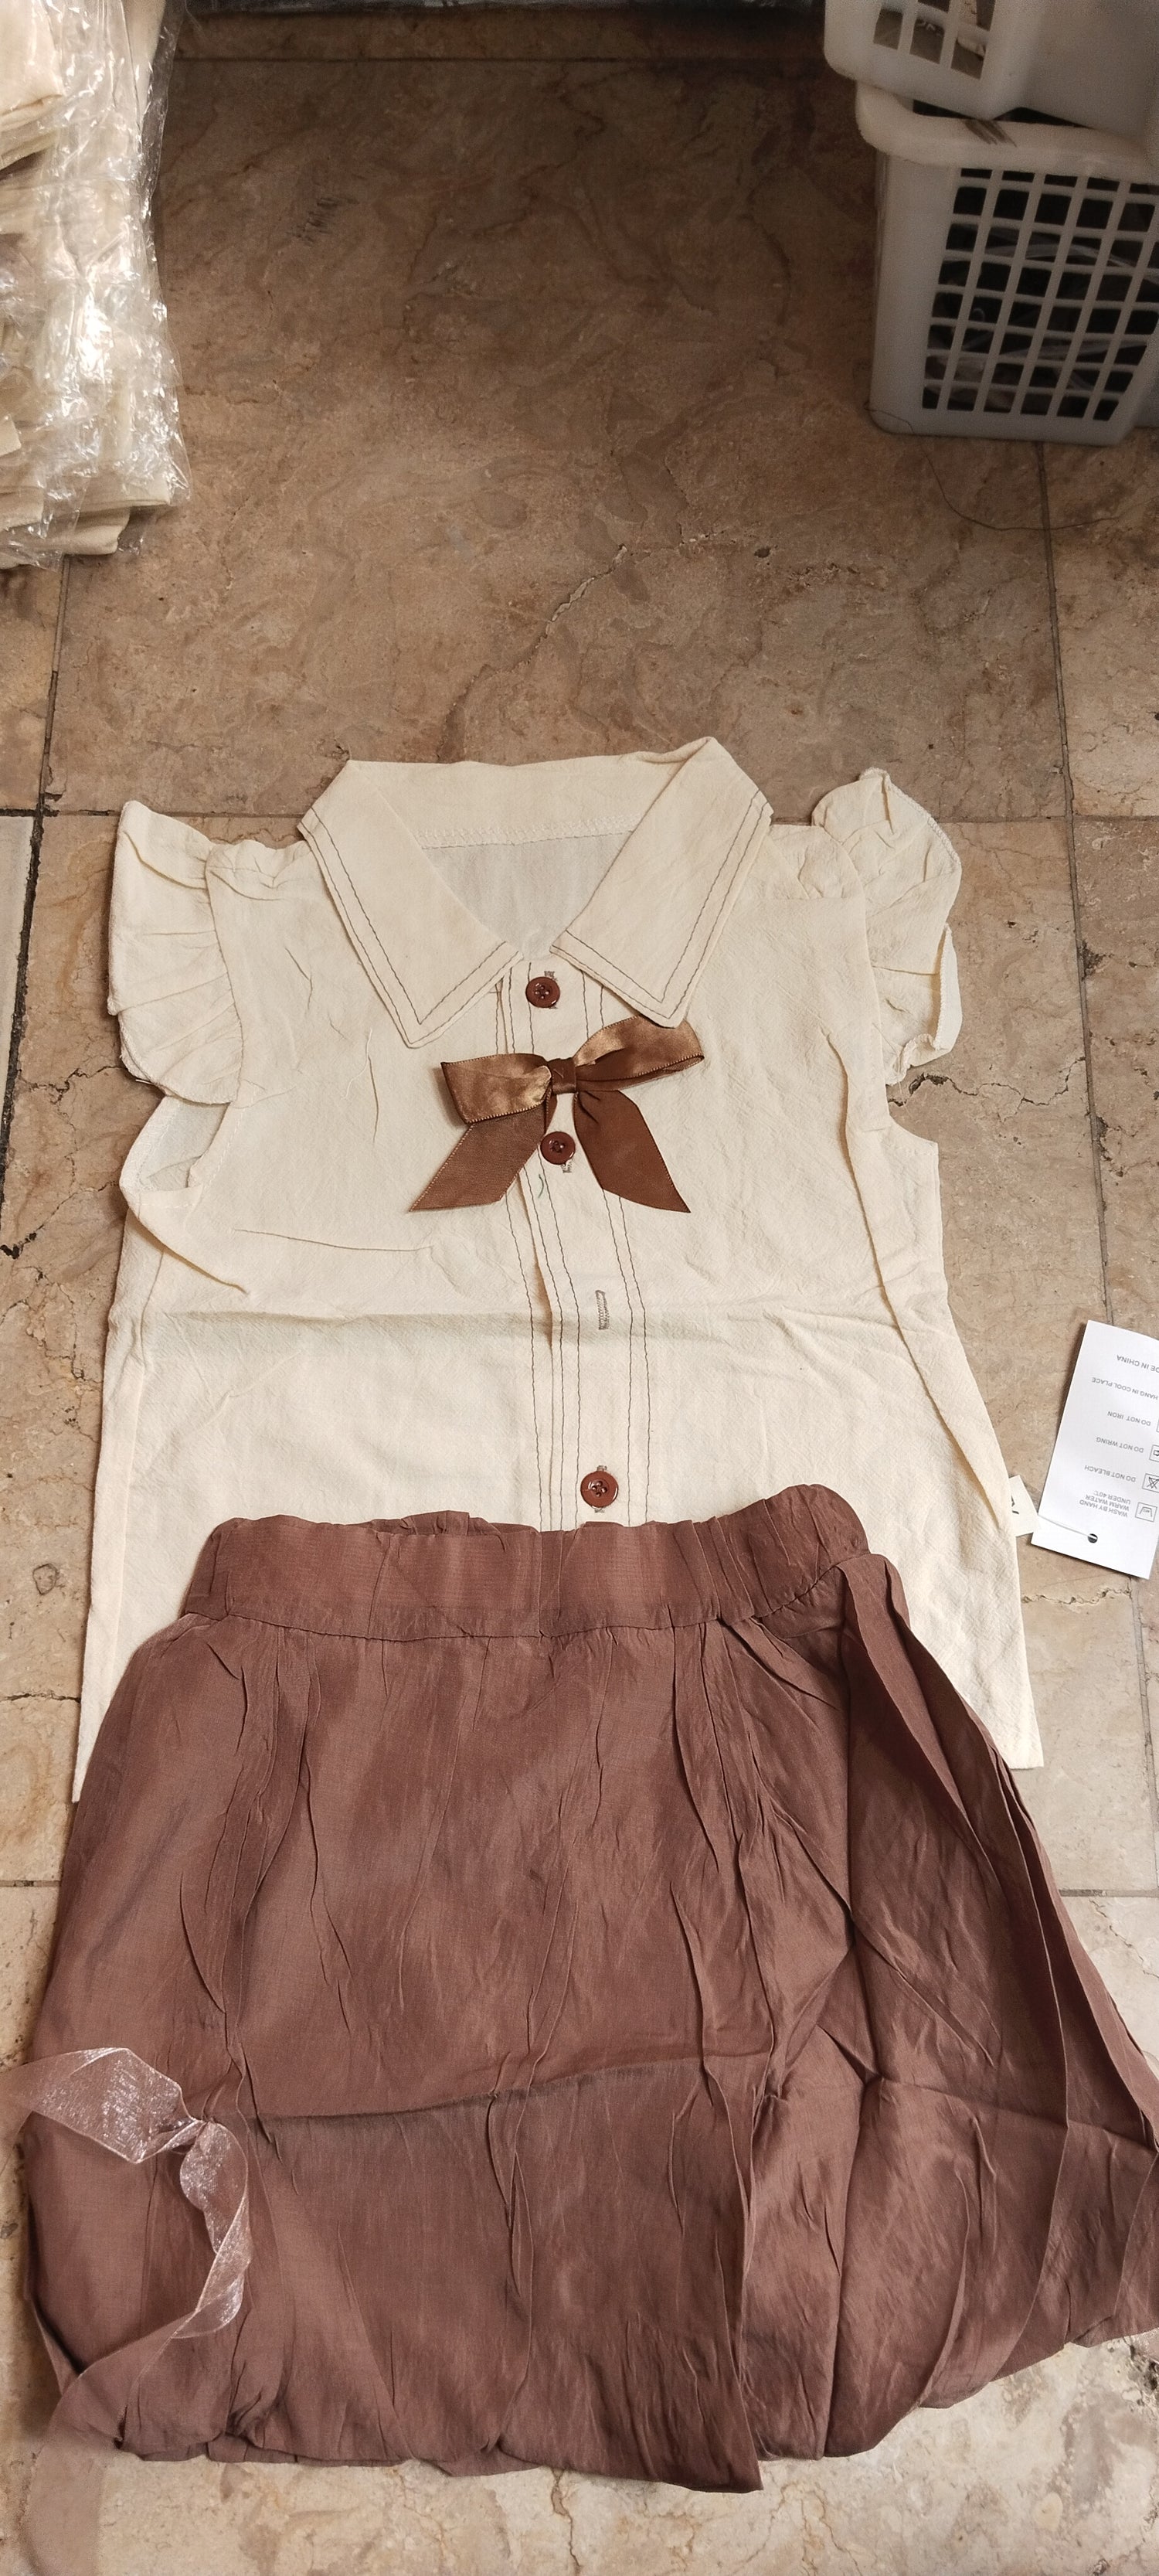 [340415-V1] - Baju Setelan Blouse Kutung Fashion Import Anak Perempuan - Motif Plain Ribbon